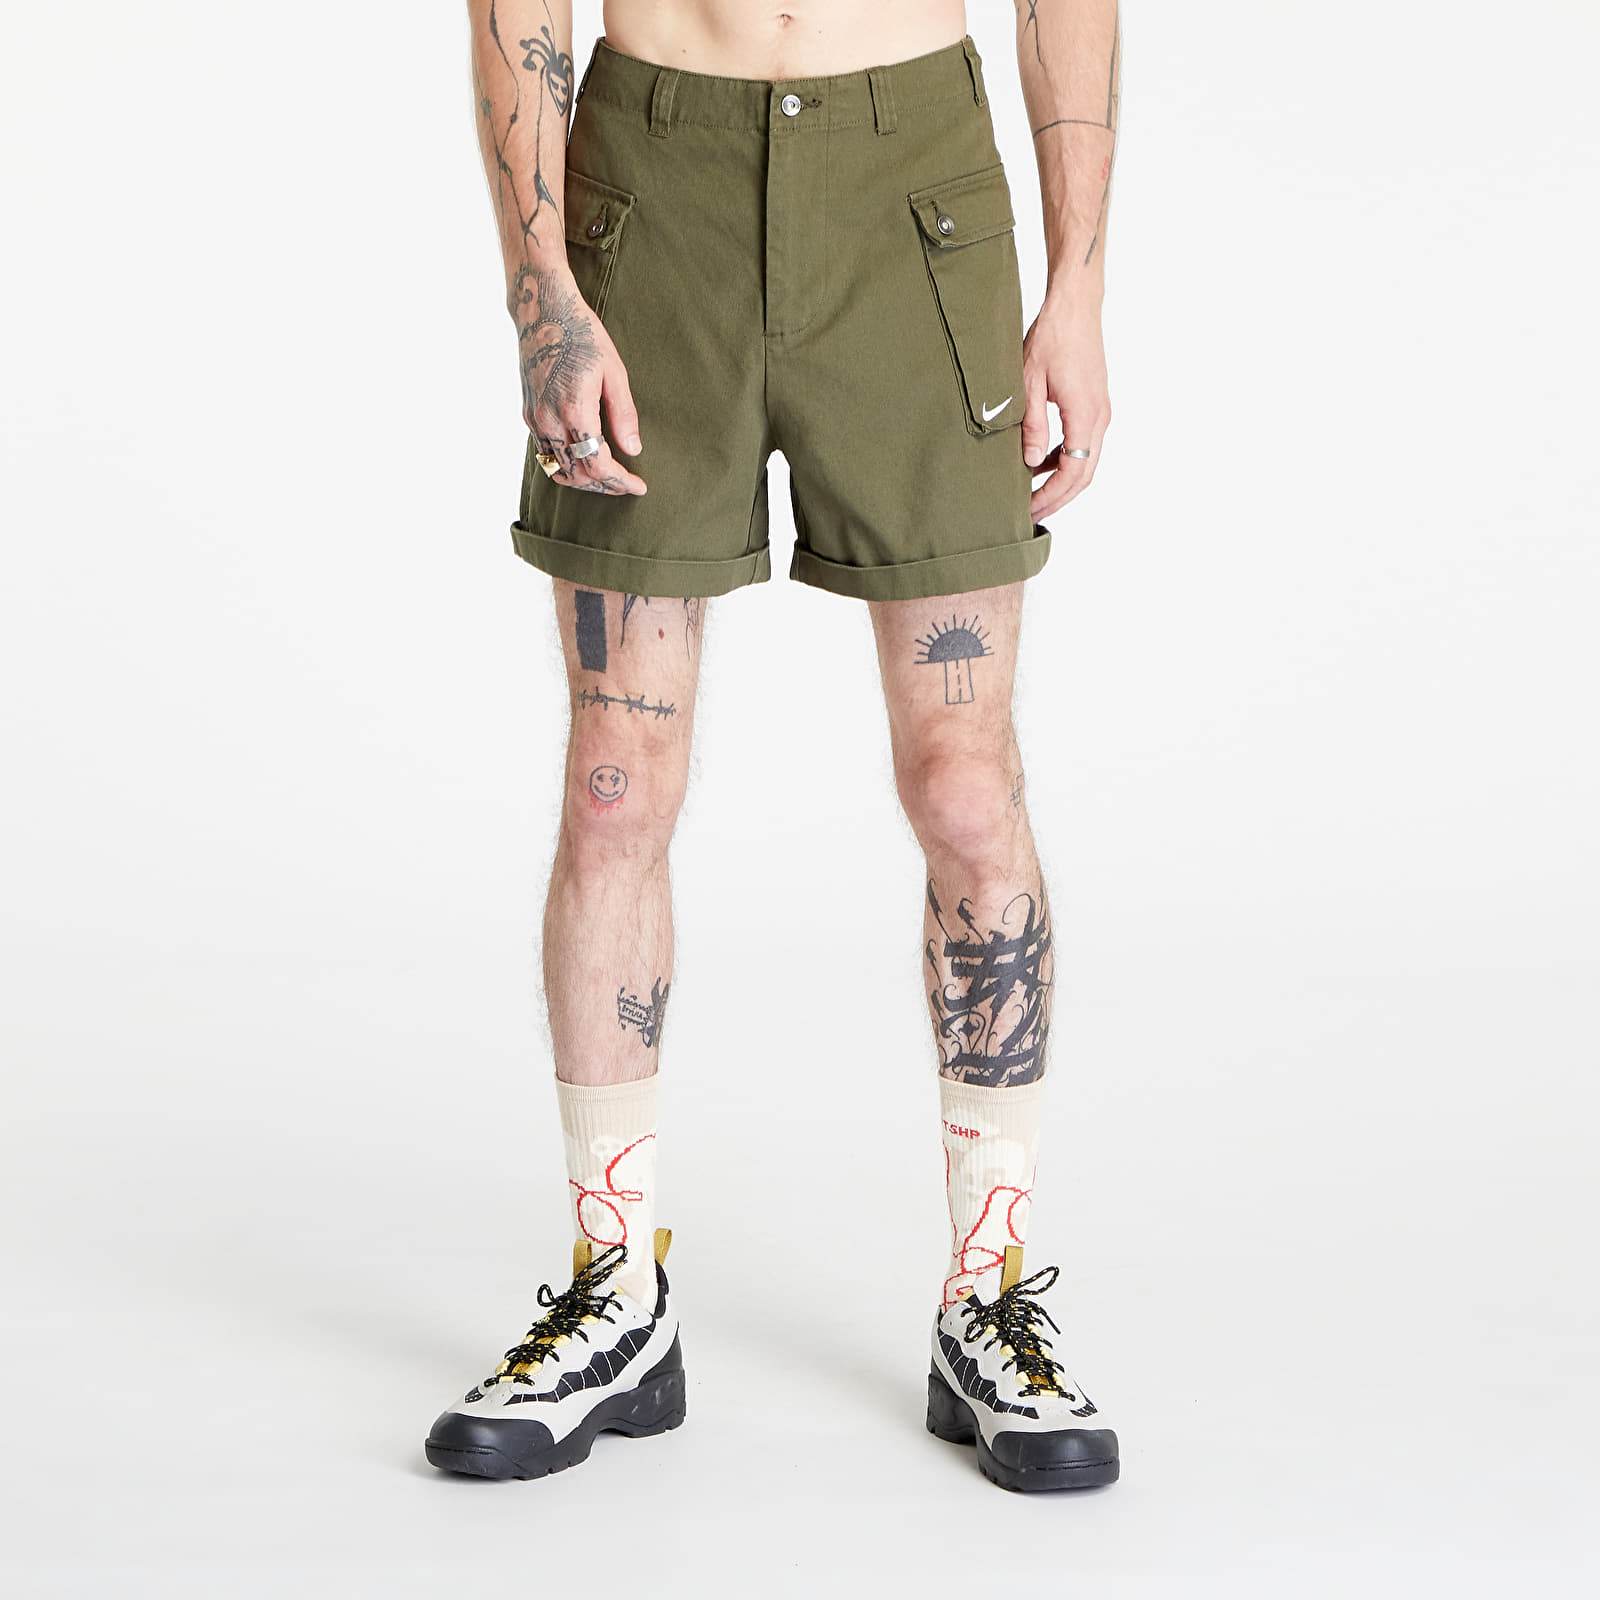 Nike - life men's woven cargo shorts cargo khaki/ white